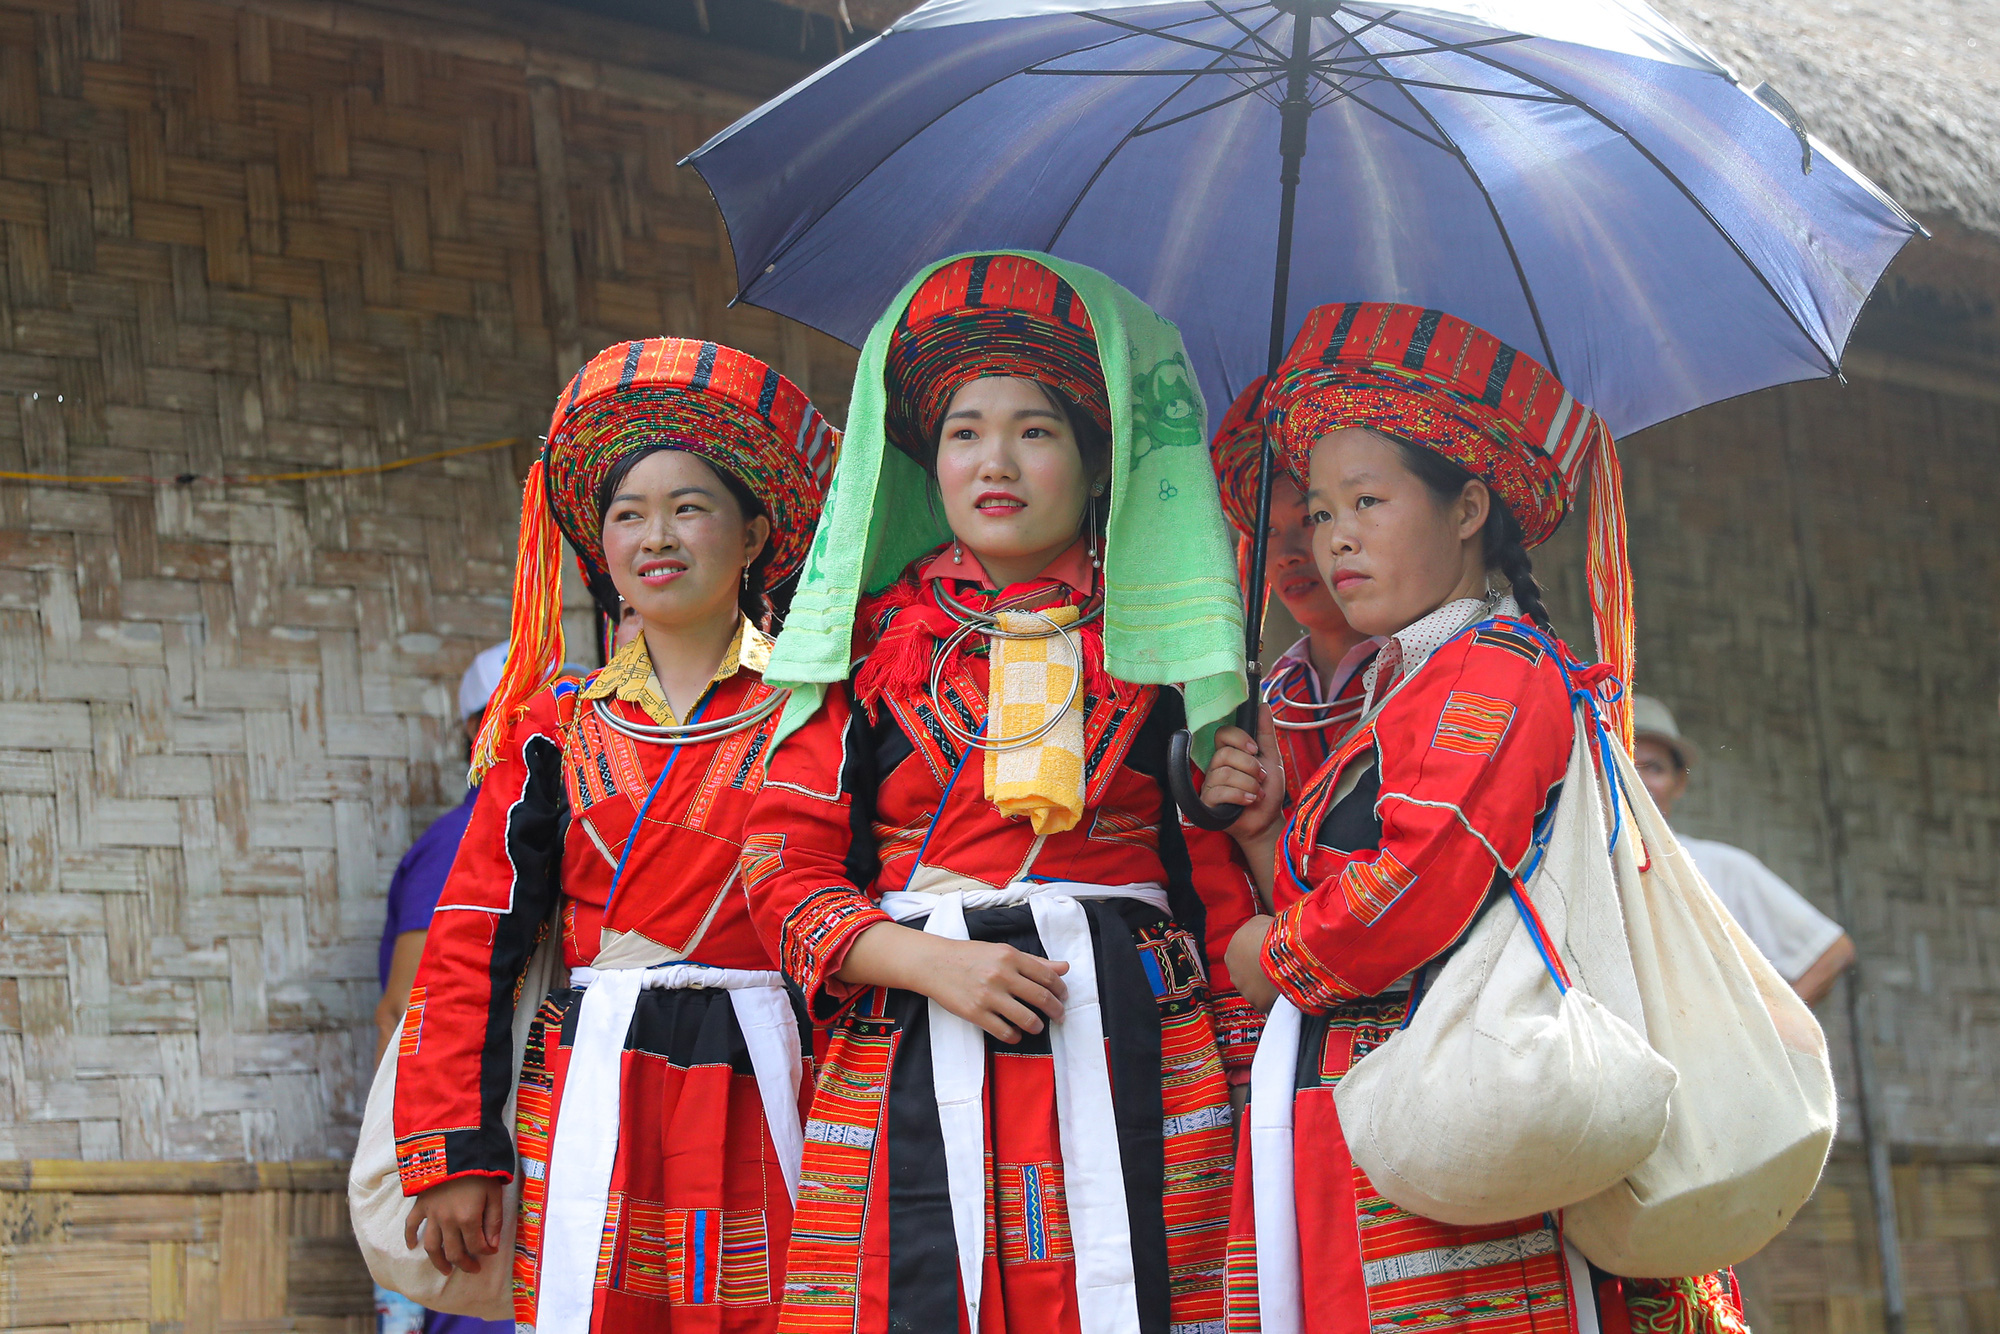 Tái hiện lễ cưới của Dân tộc Pà Thẻn (Hà Giang) và nghi lễ Mừng lúa mới của dân tộc Bahnar (Gia Lai)  tại Hà Nội - Ảnh 7.